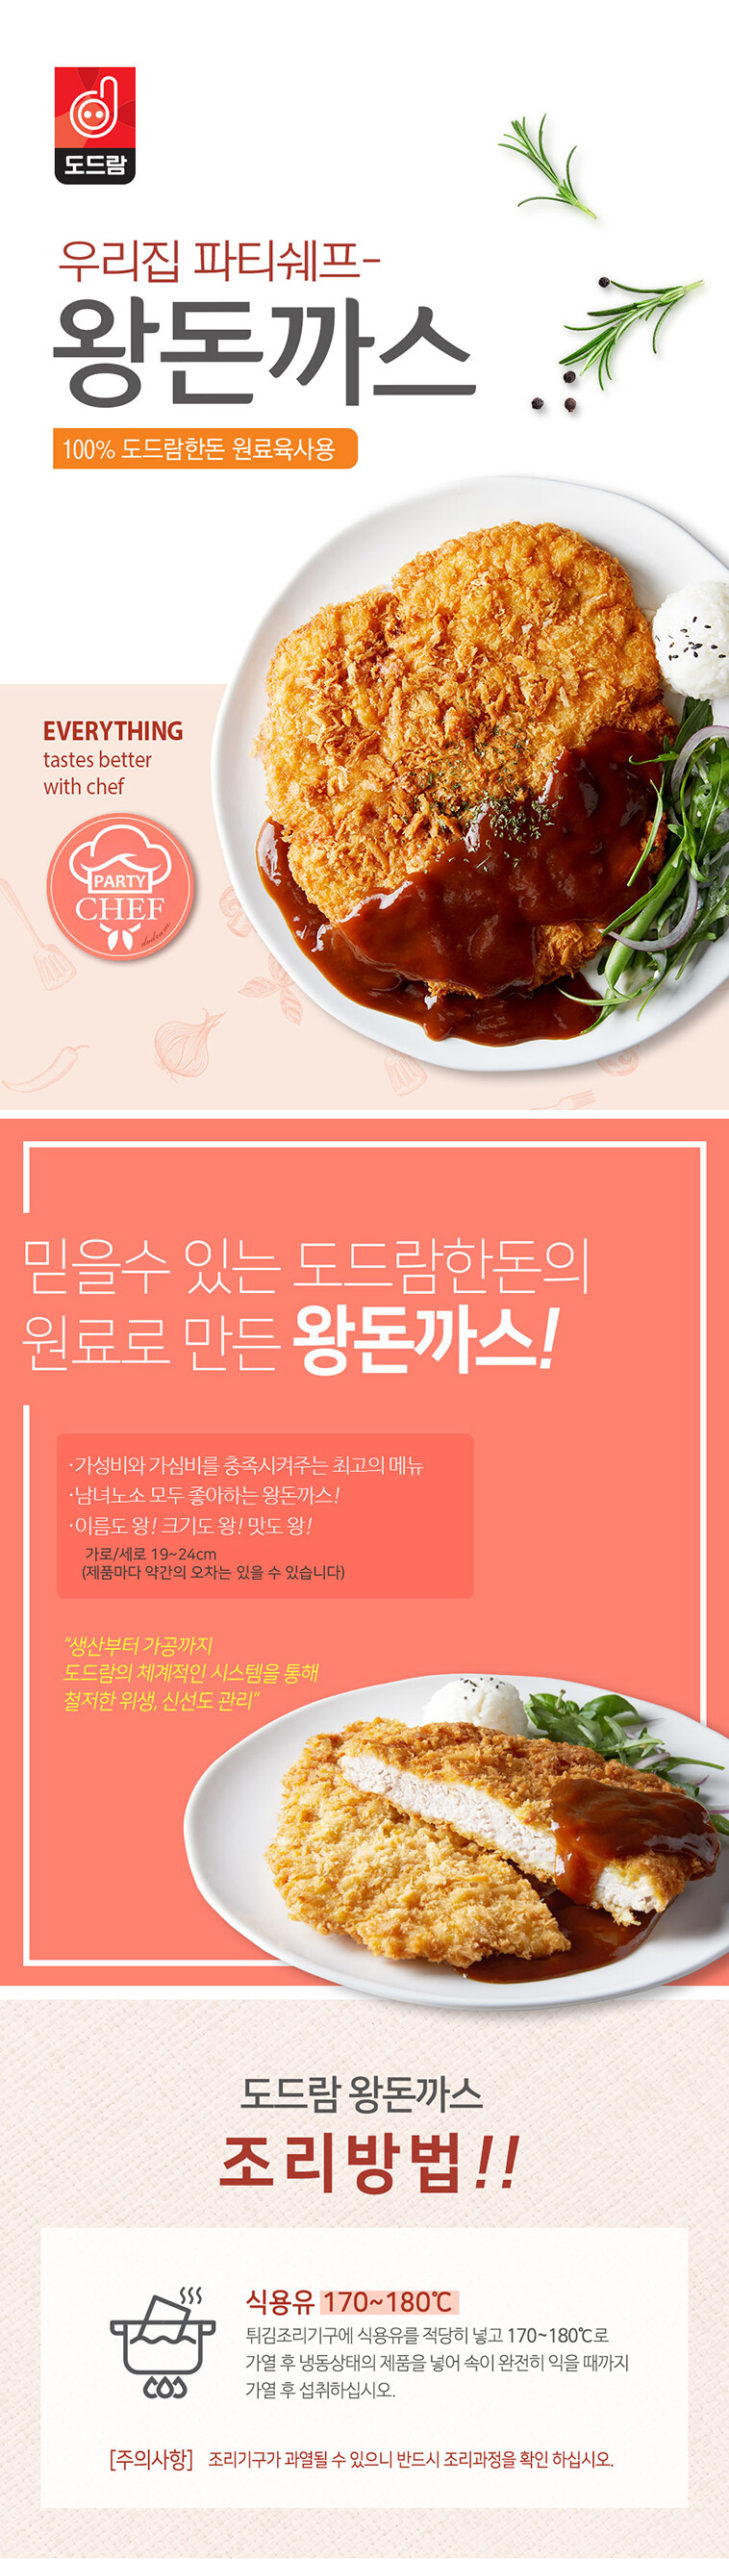 韓國食品-[Korea Dodram] Giant Pork Cutlet 330g